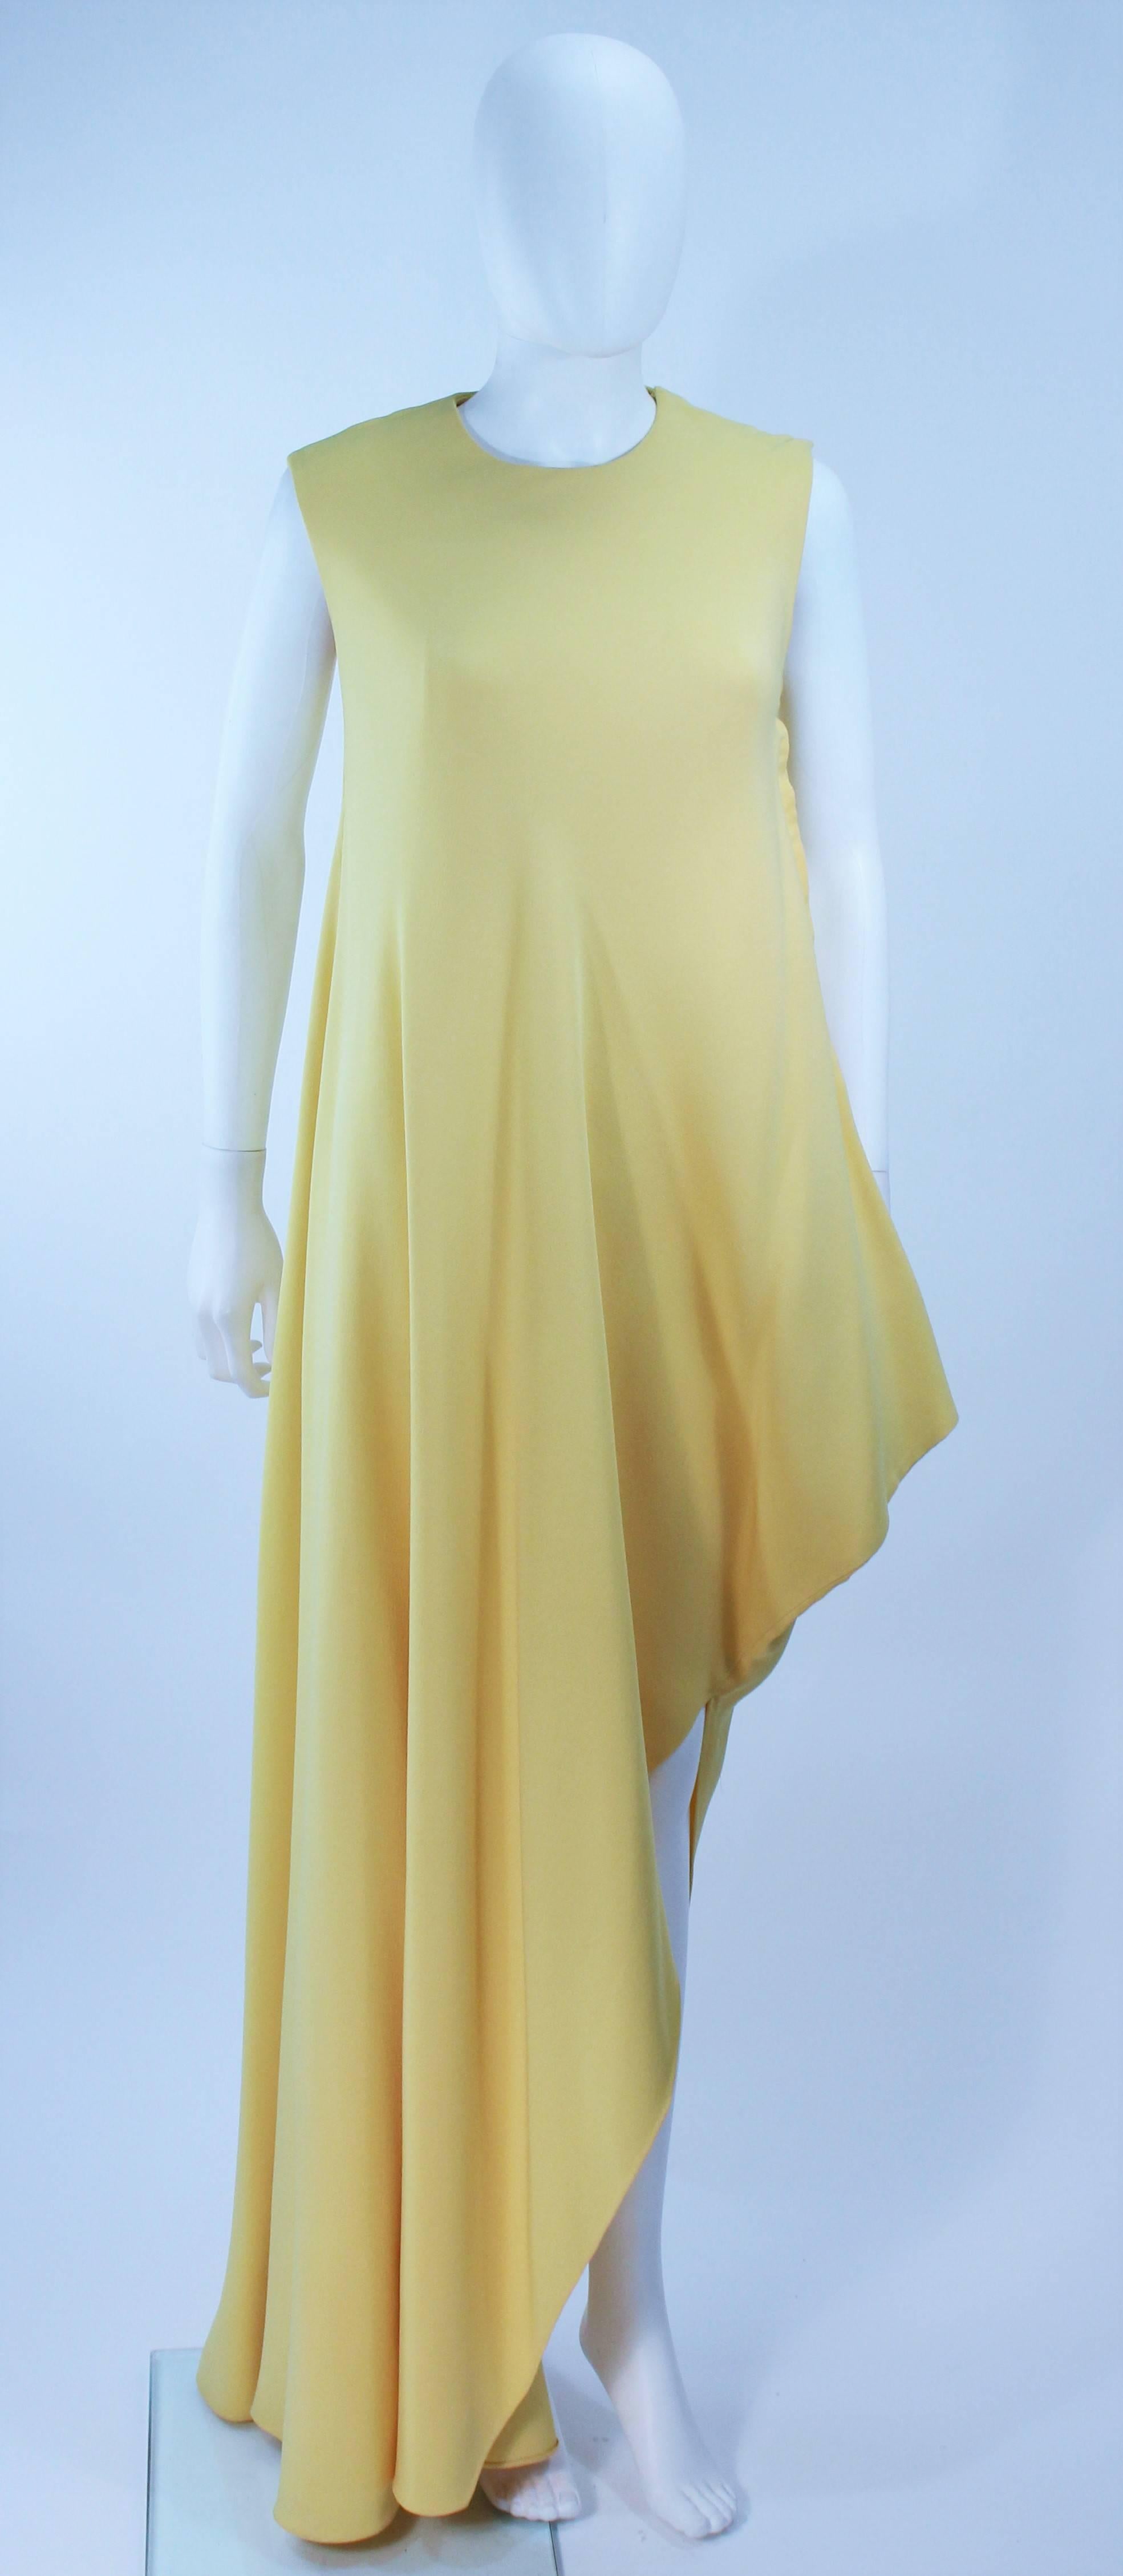 
 Dieses Kleid ist aus gelbem Seidenkrepp gefertigt. Asymmetrisches Design mit Schnappverschlüssen. In ausgezeichnetem Vintage-Zustand. 

  **Bitte vergleichen Sie die Maße für Ihre persönliche Genauigkeit. Die Größe im Beschreibungsfeld ist eine